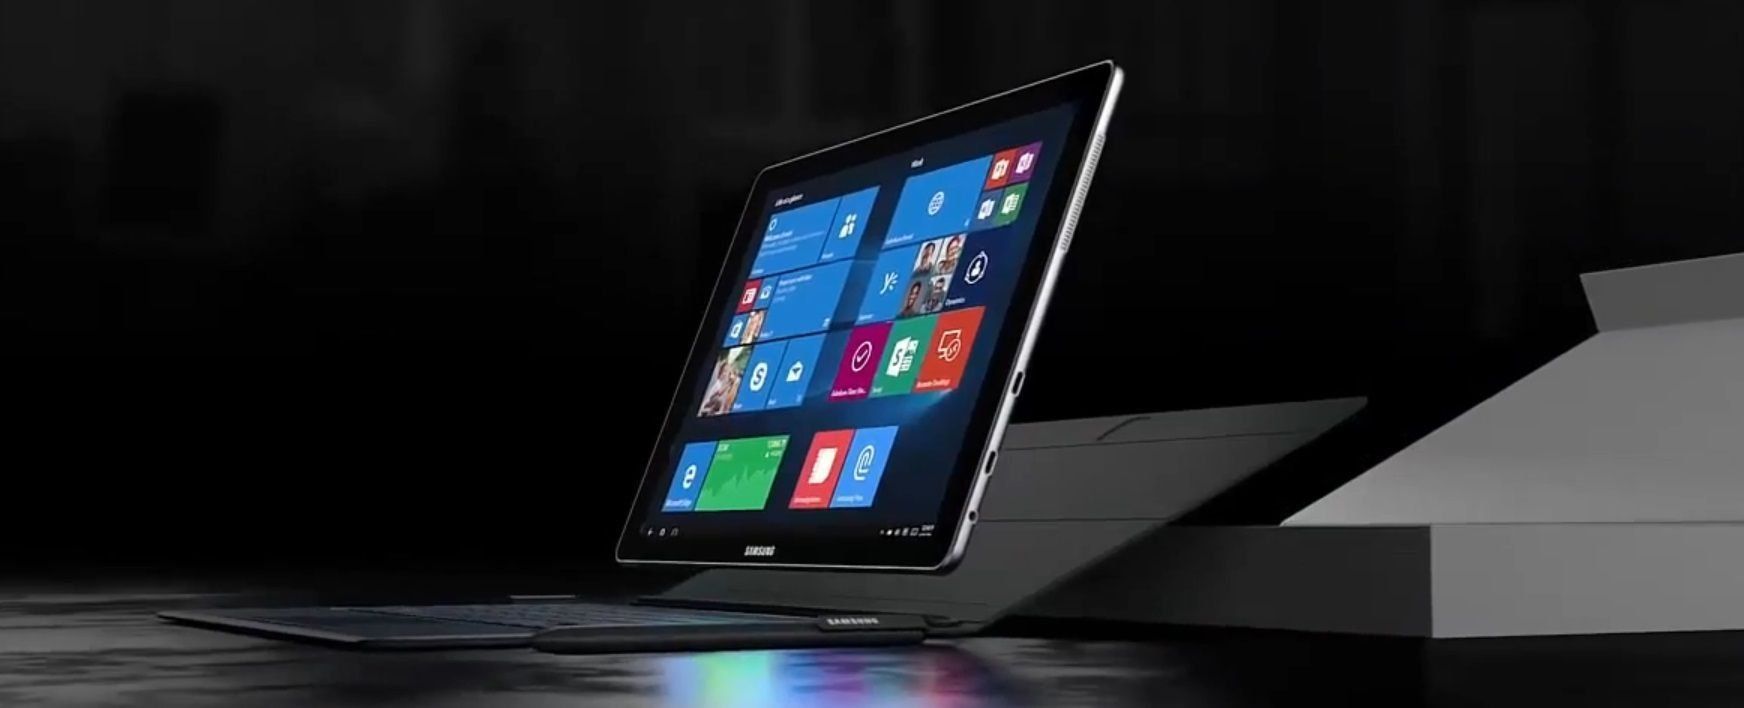 Υπολογιστής tablet Samsung Galaxy Book2 σε Windows - πλεονεκτήματα και μειονεκτήματα